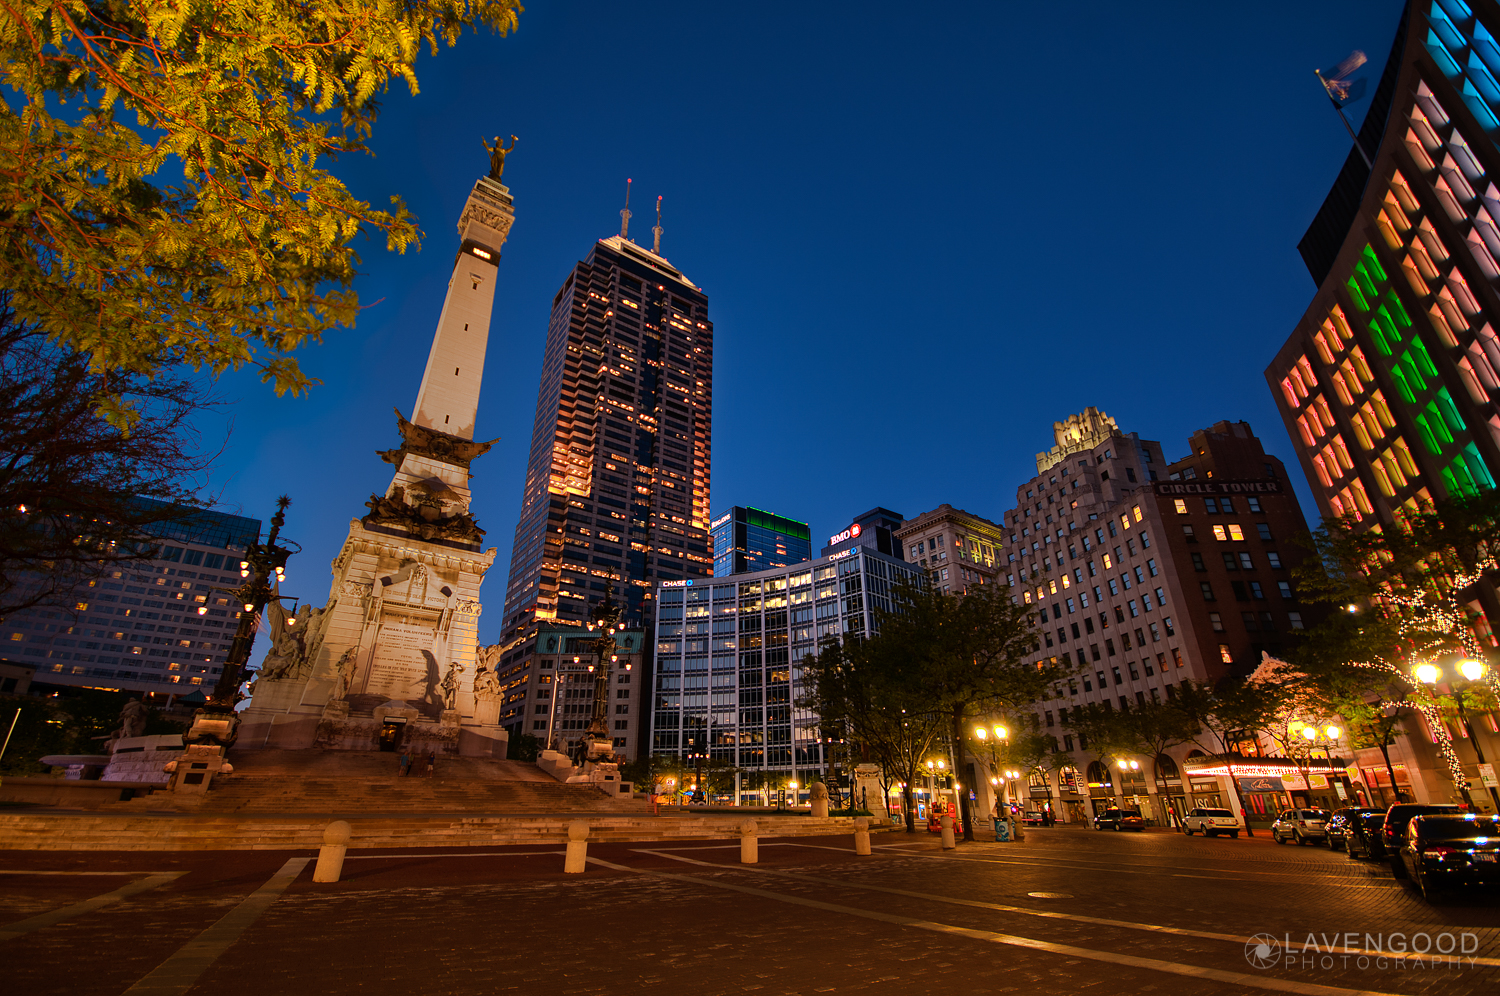 Indianapolis Monument Circle at Night